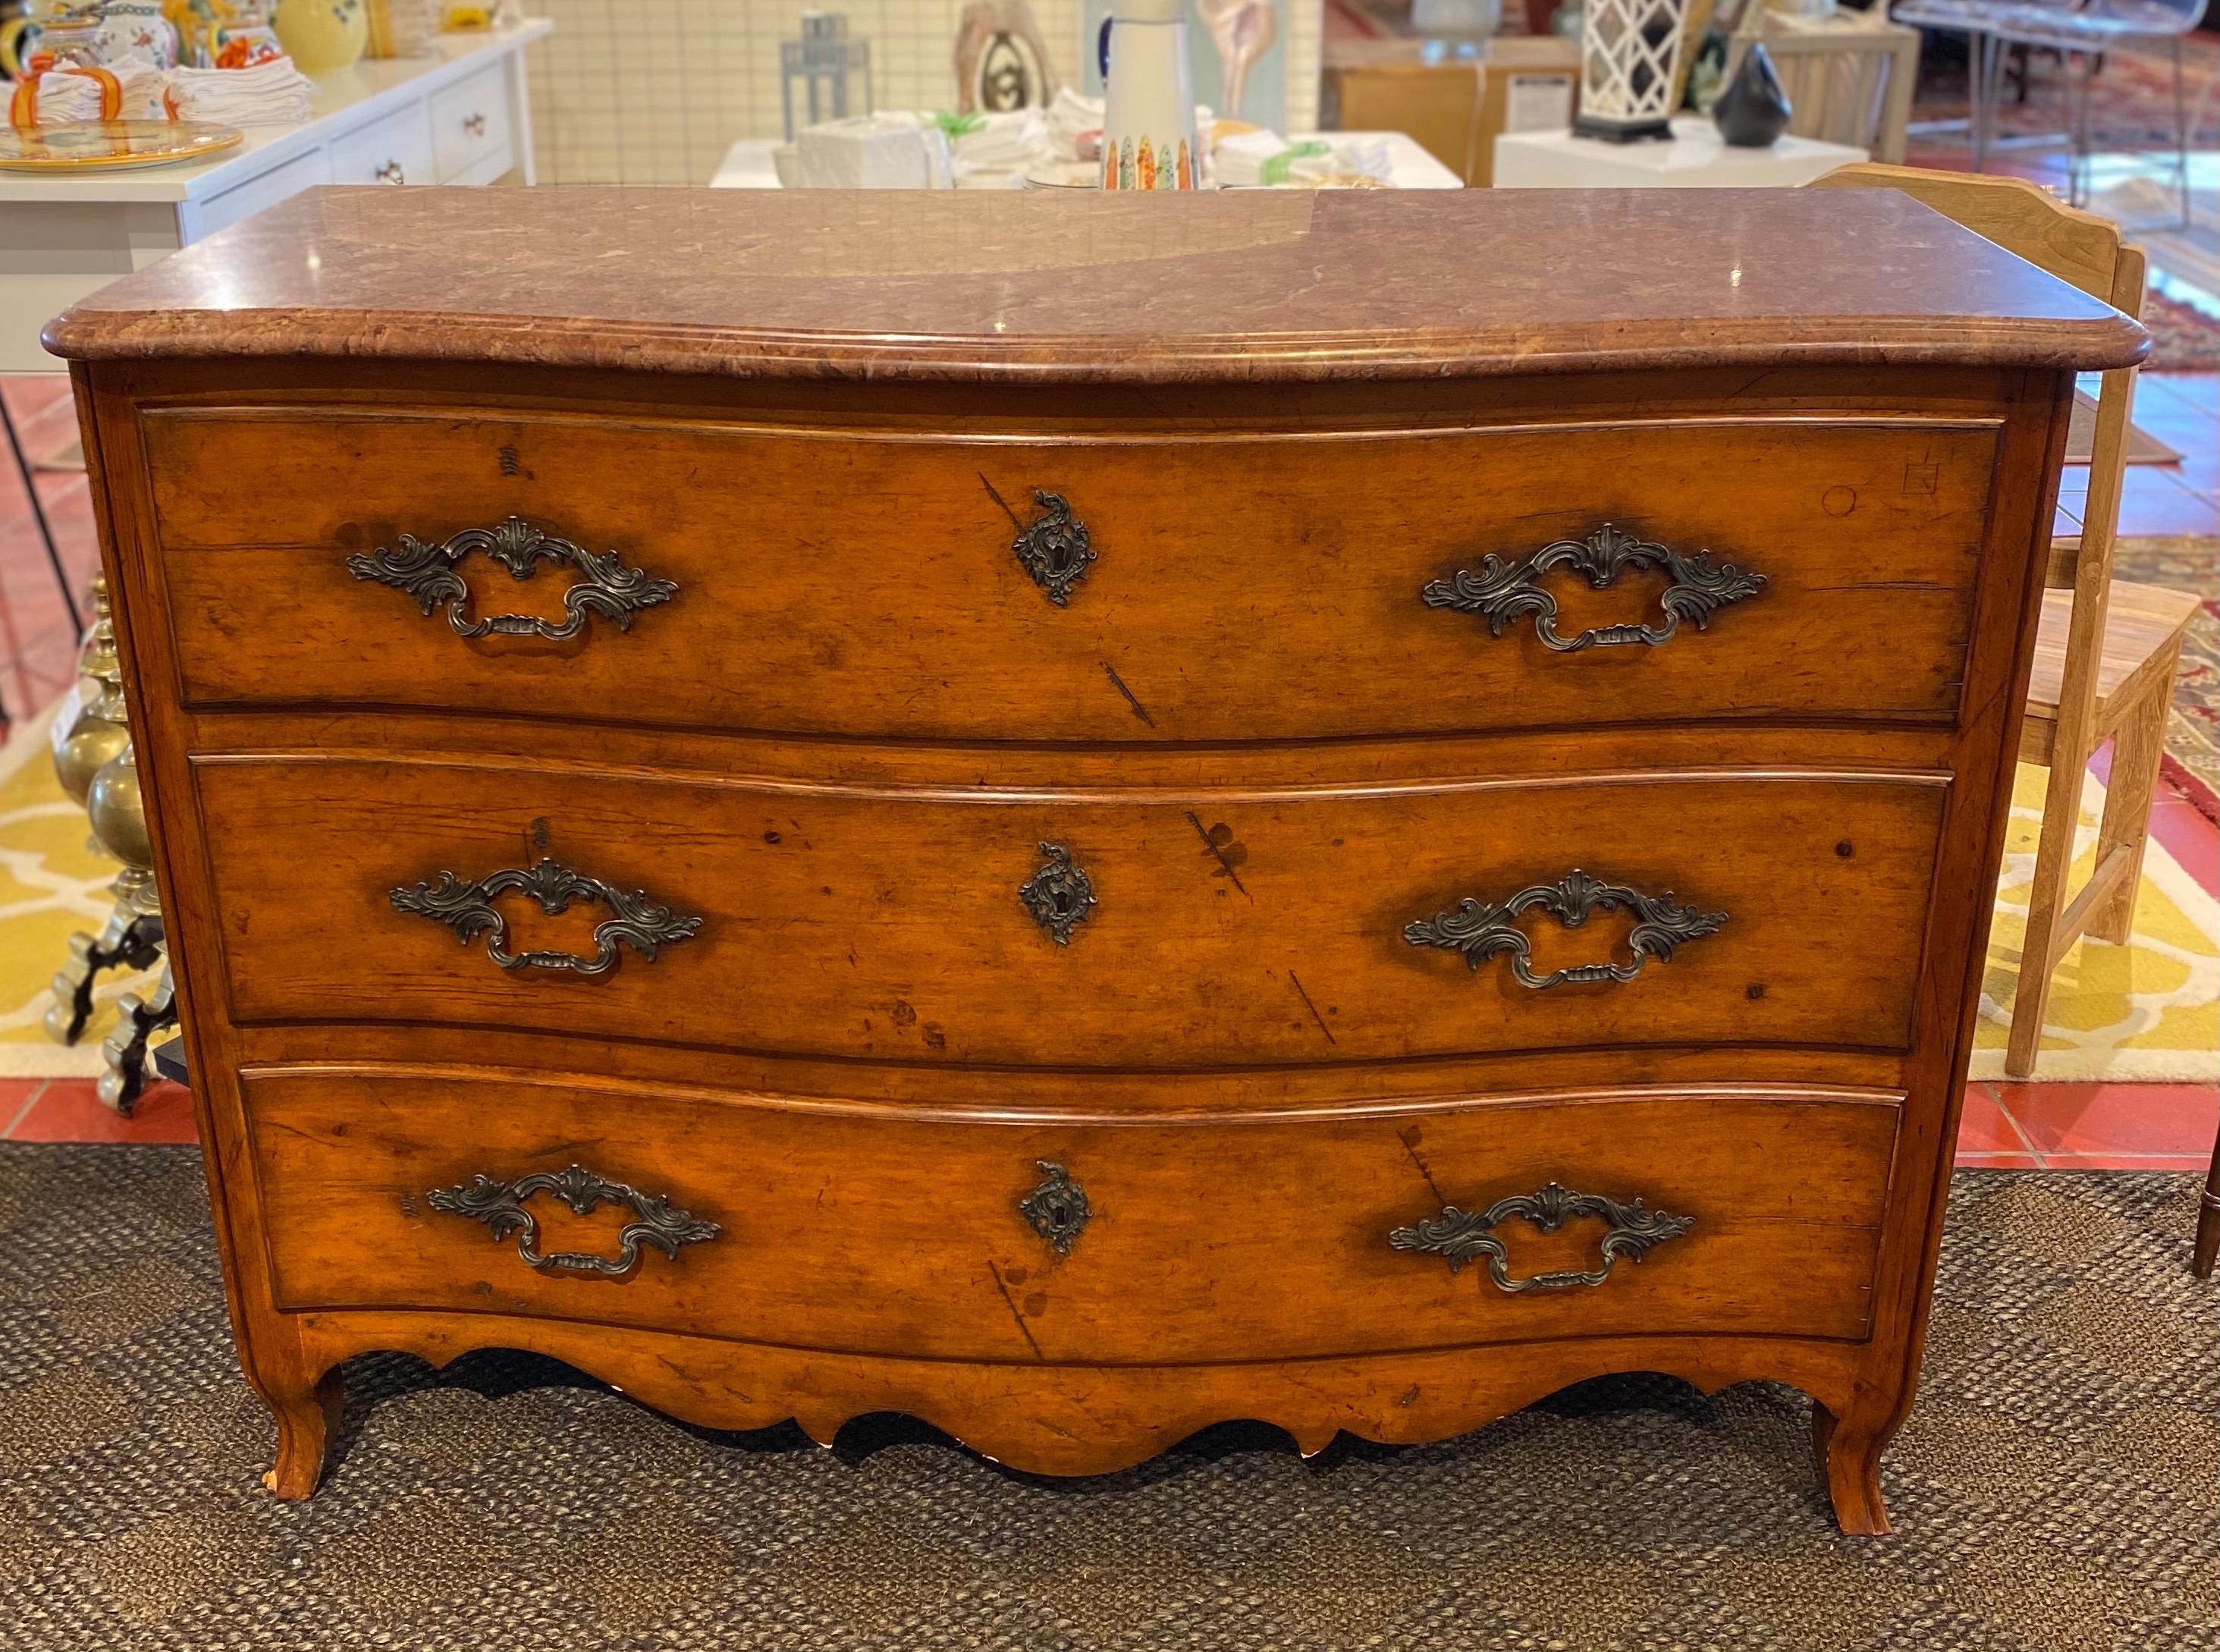 Ralph Lauren 3-drawer dresser with marble top

Measures: 56